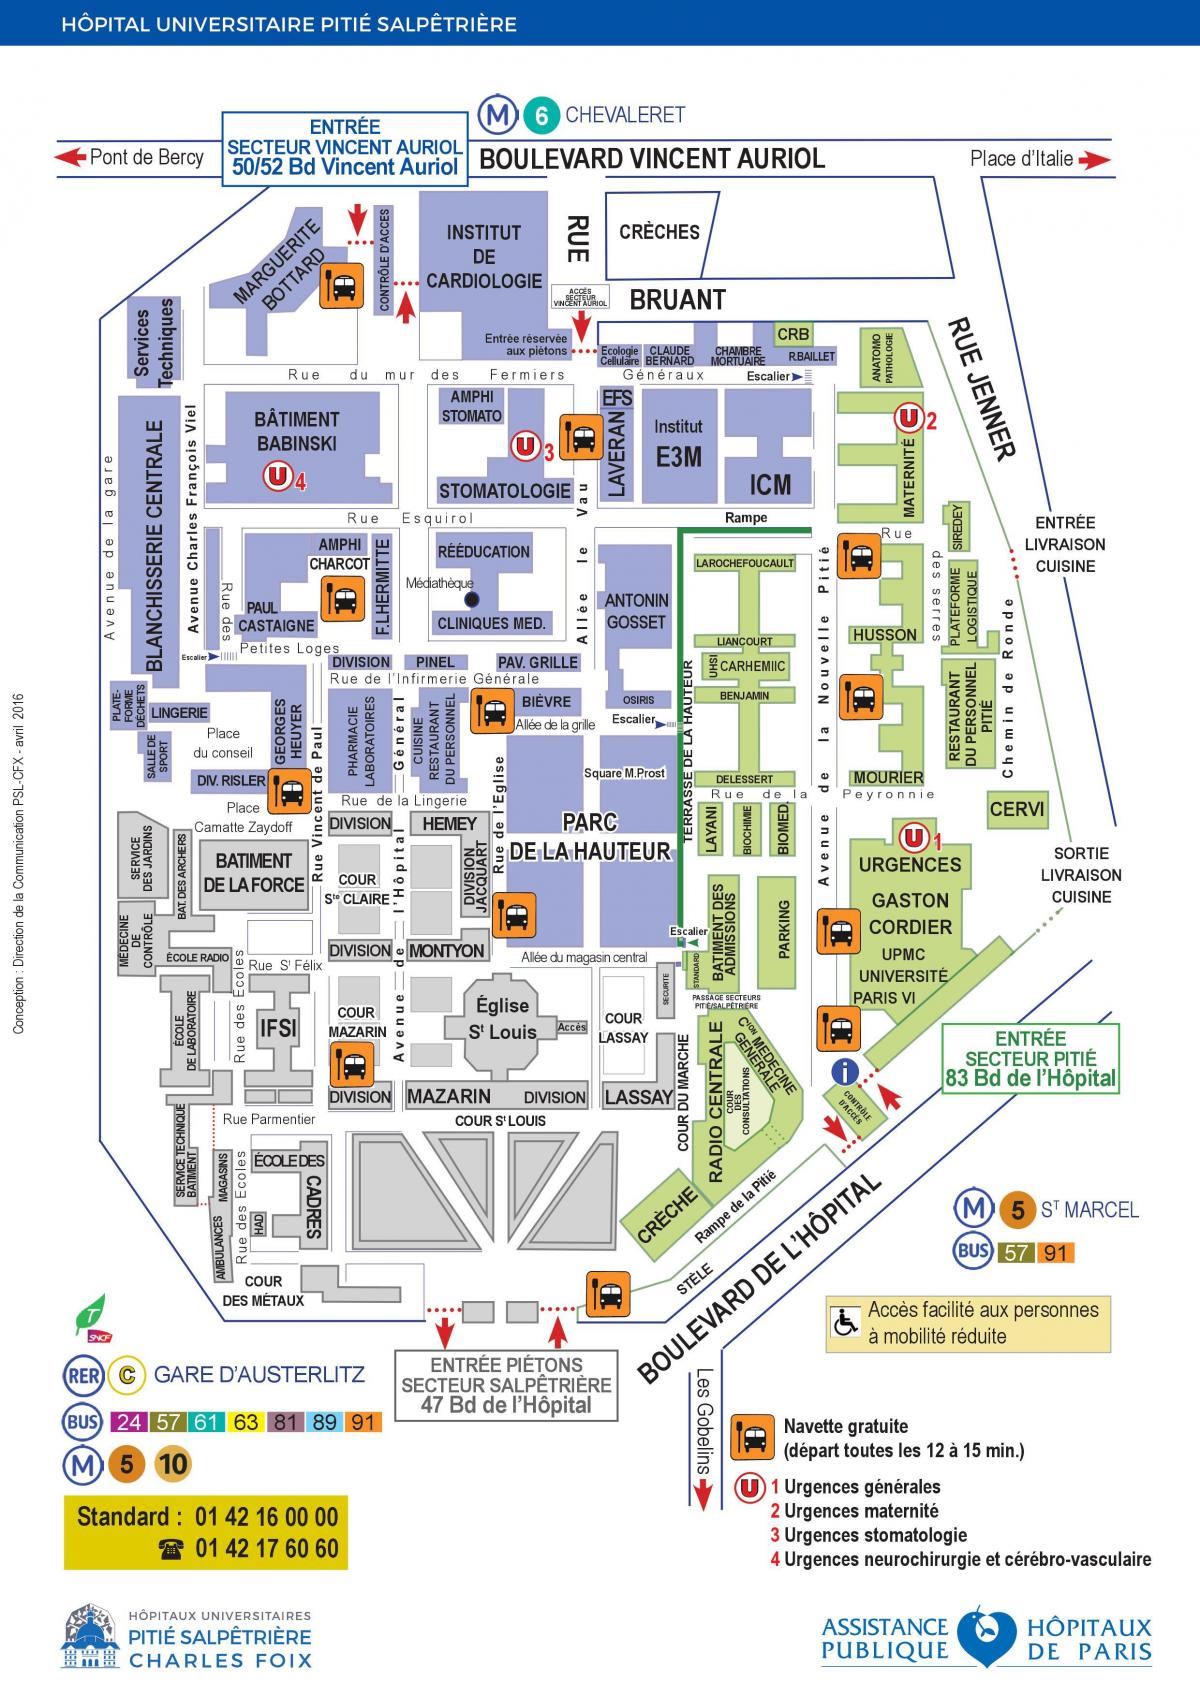 Zemljevid Pitie Salpetriere bolnišnici